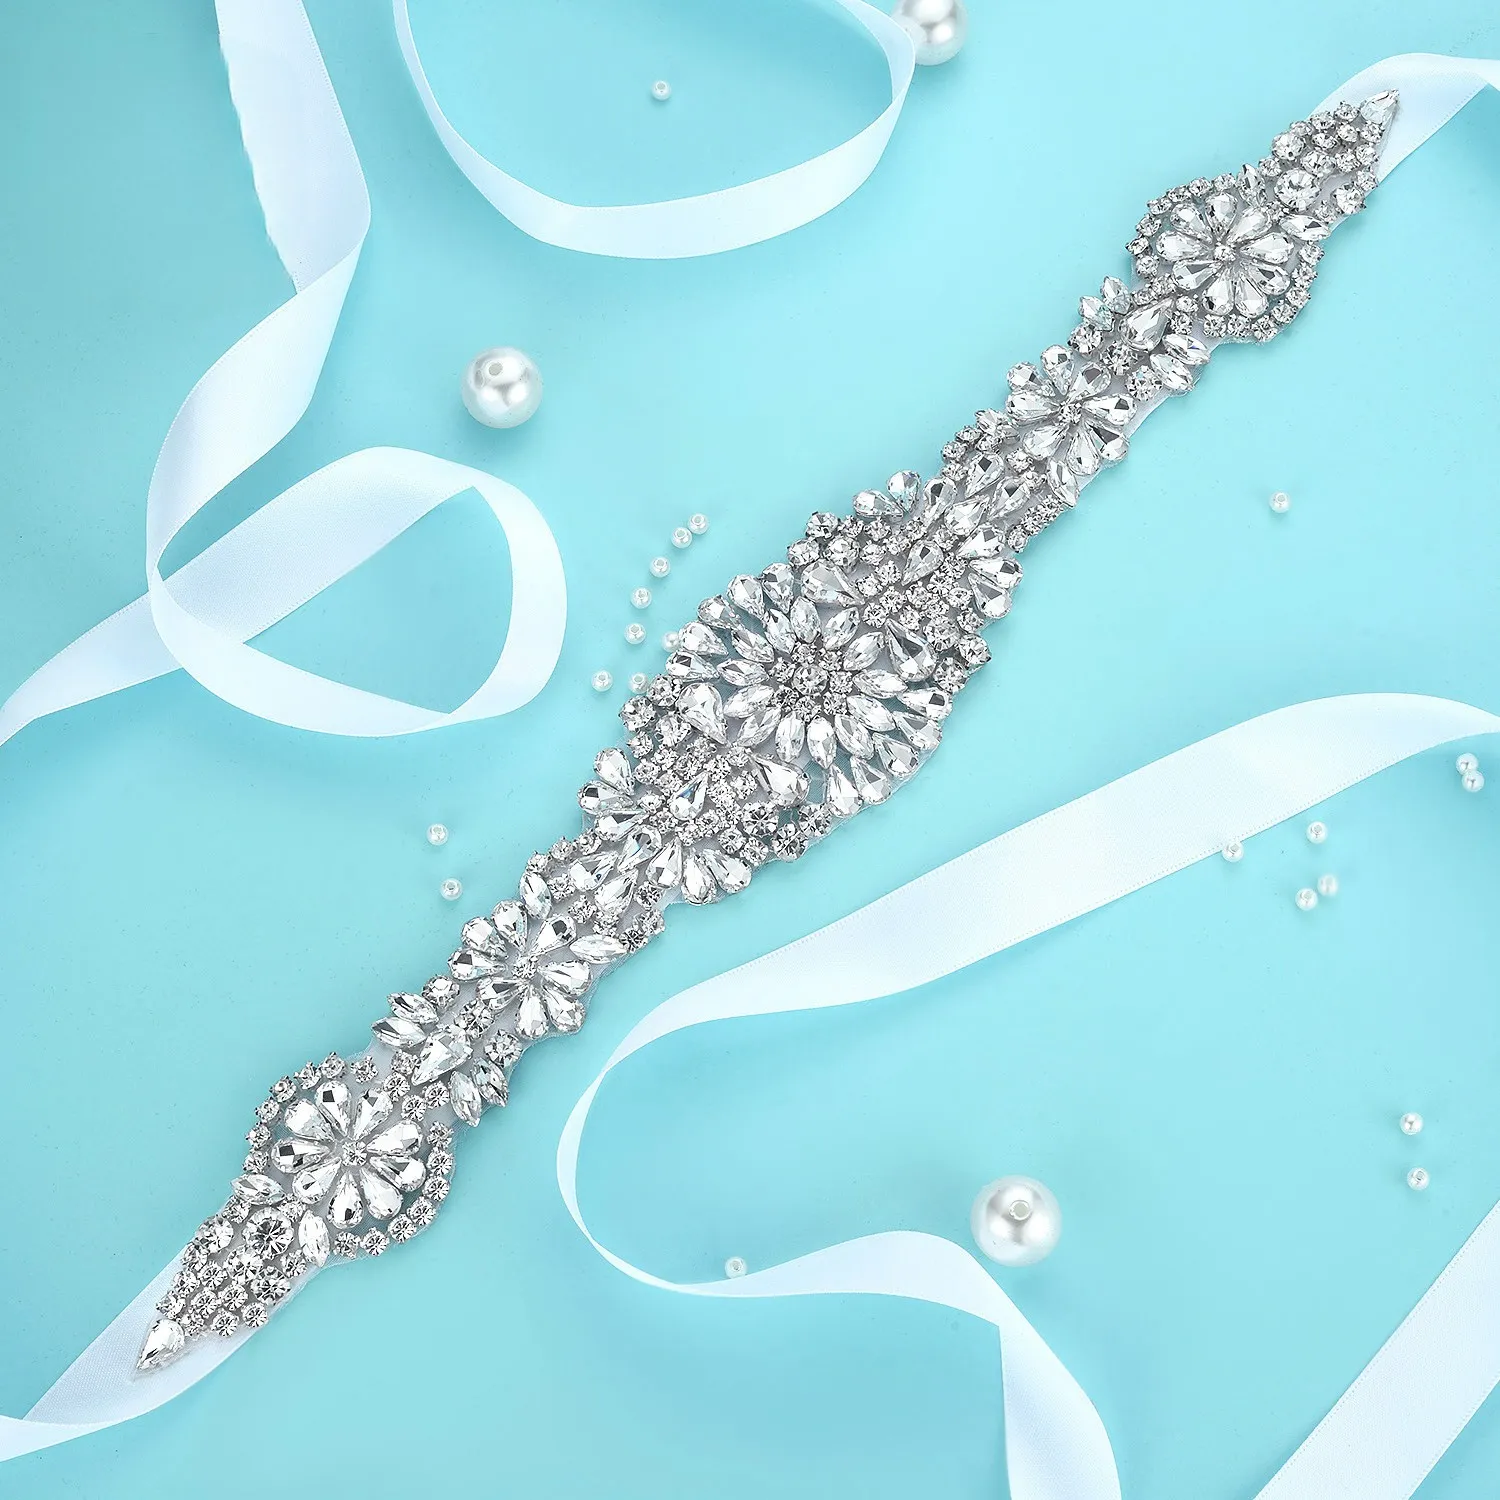 Sabuk pernikahan berlian imitasi, ikat pinggang pengantin mewah dengan pita satin untuk gaun pernikahan 30 buah